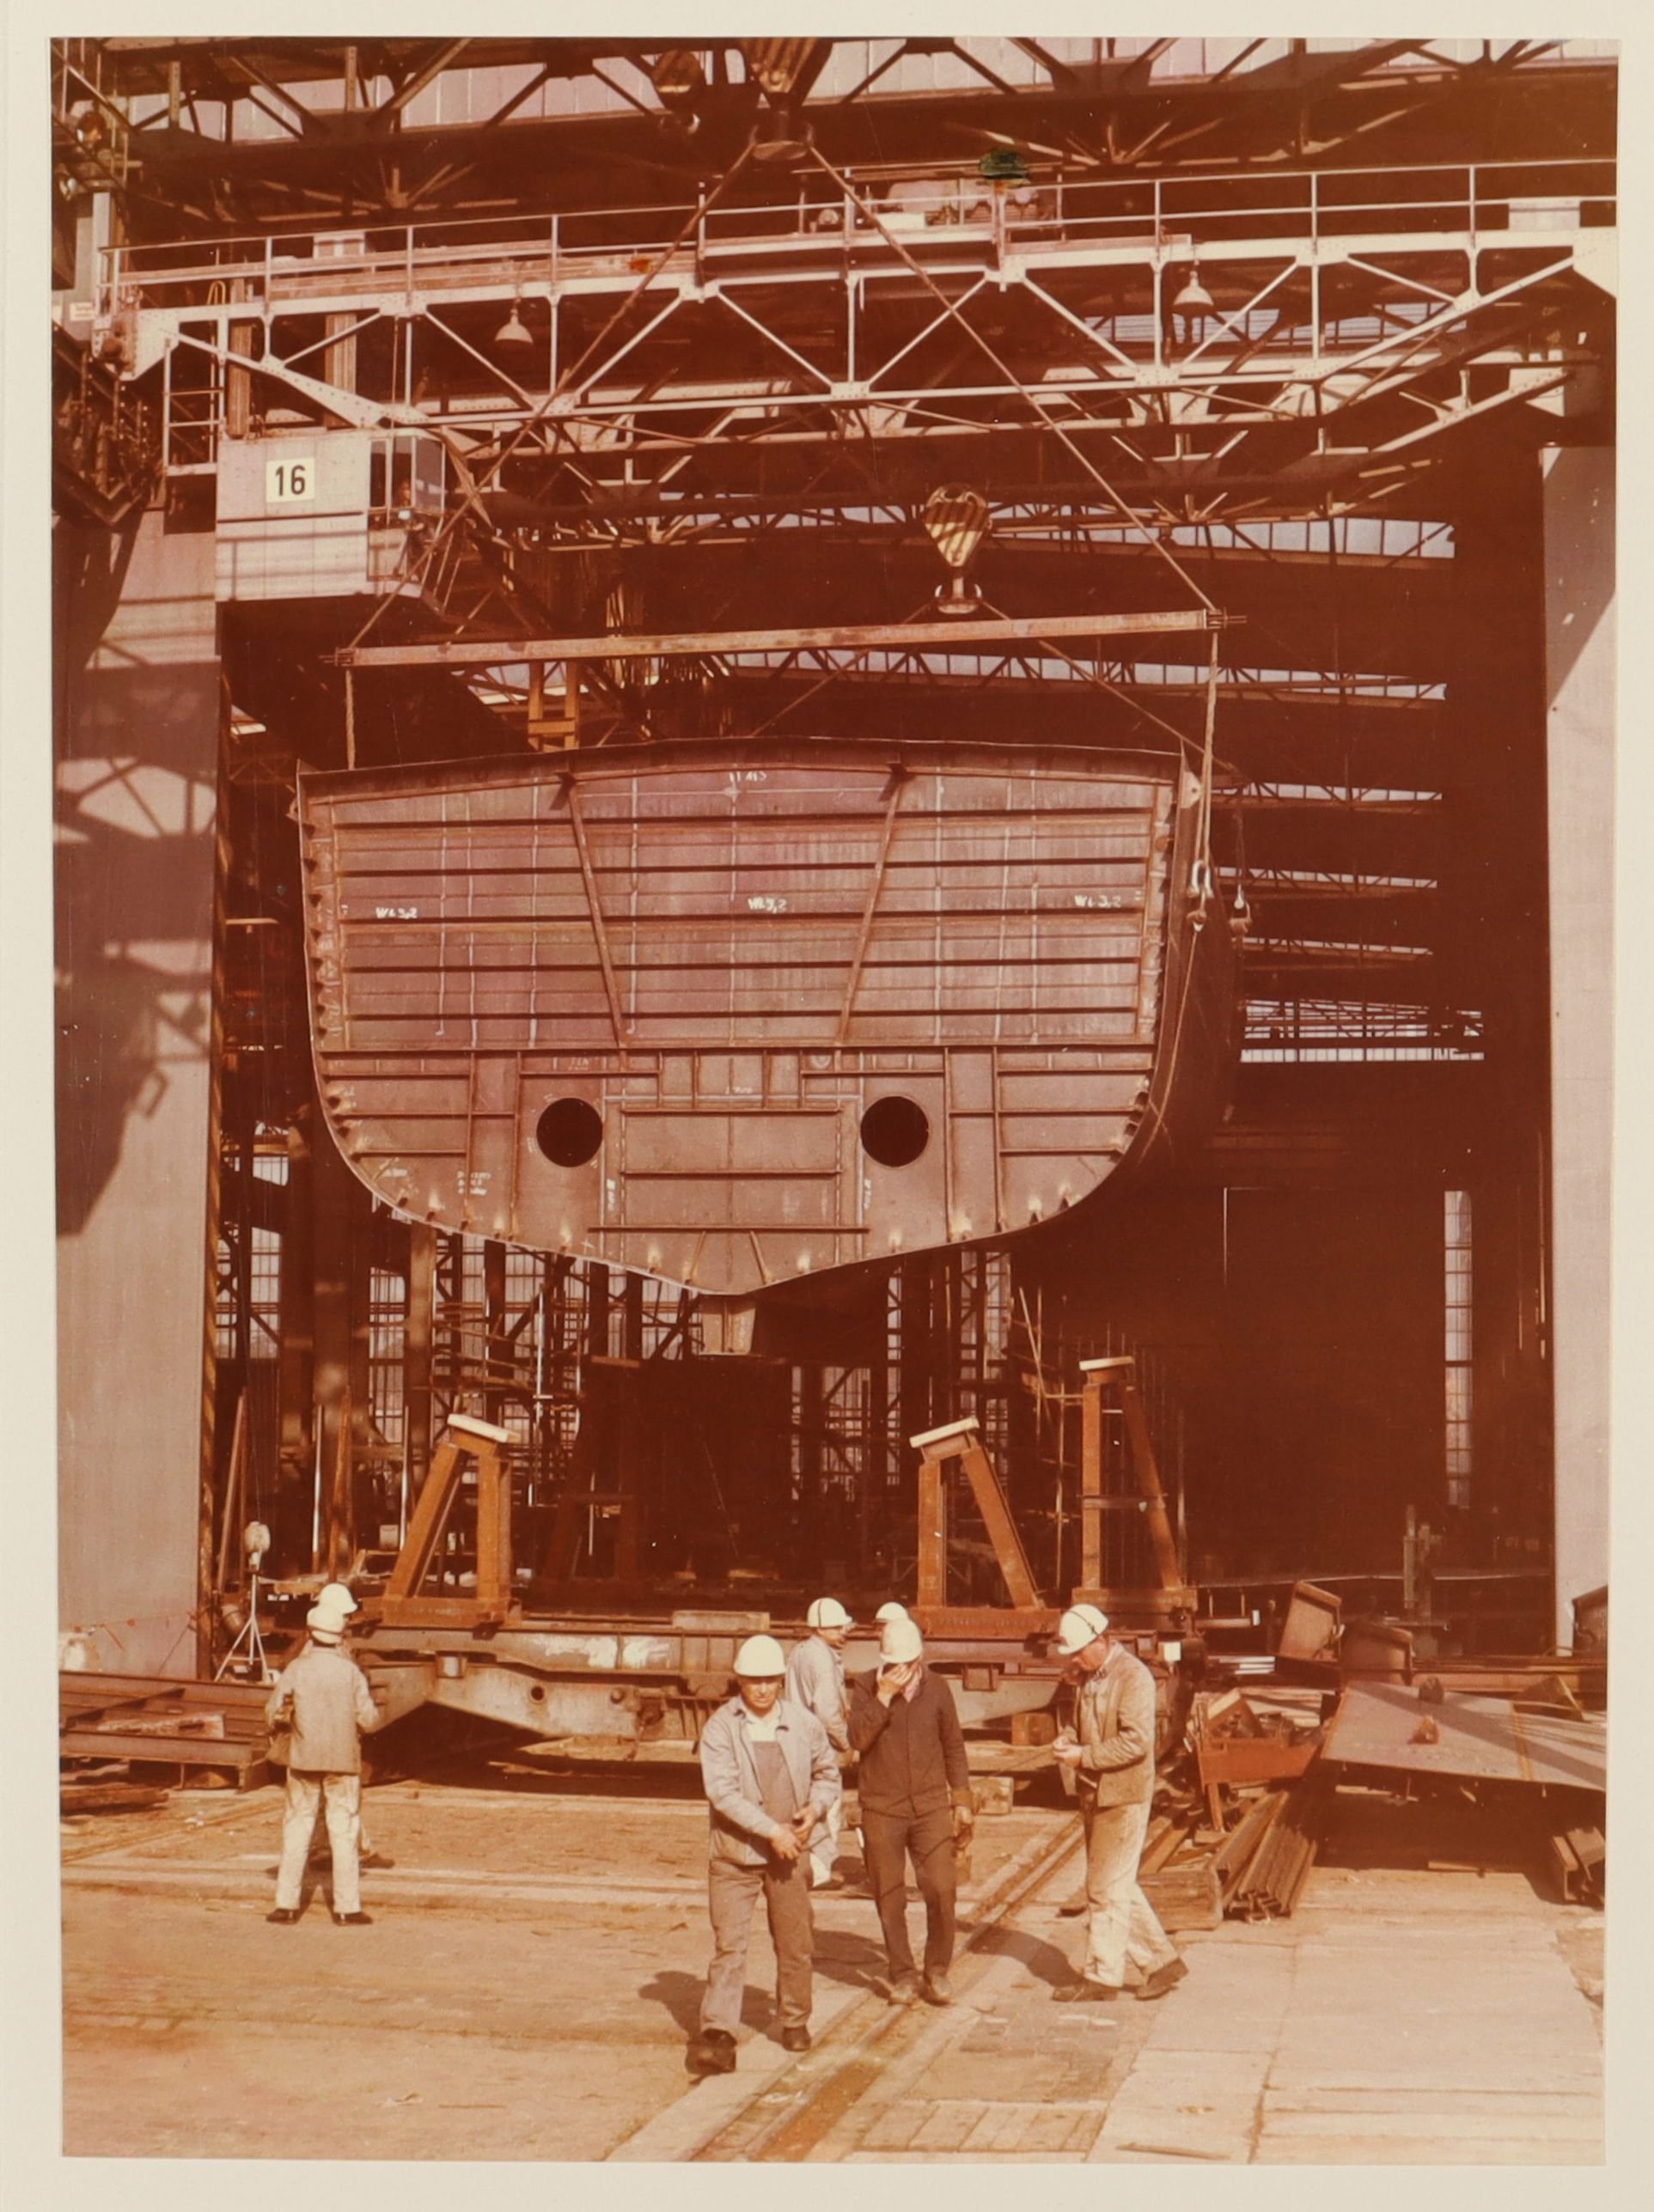 Bau der Motorjacht "Ostseeland" auf der Peene-Werft Greifswald (Schiffbau- und Schiffahrtsmuseum Rostock RR-F)